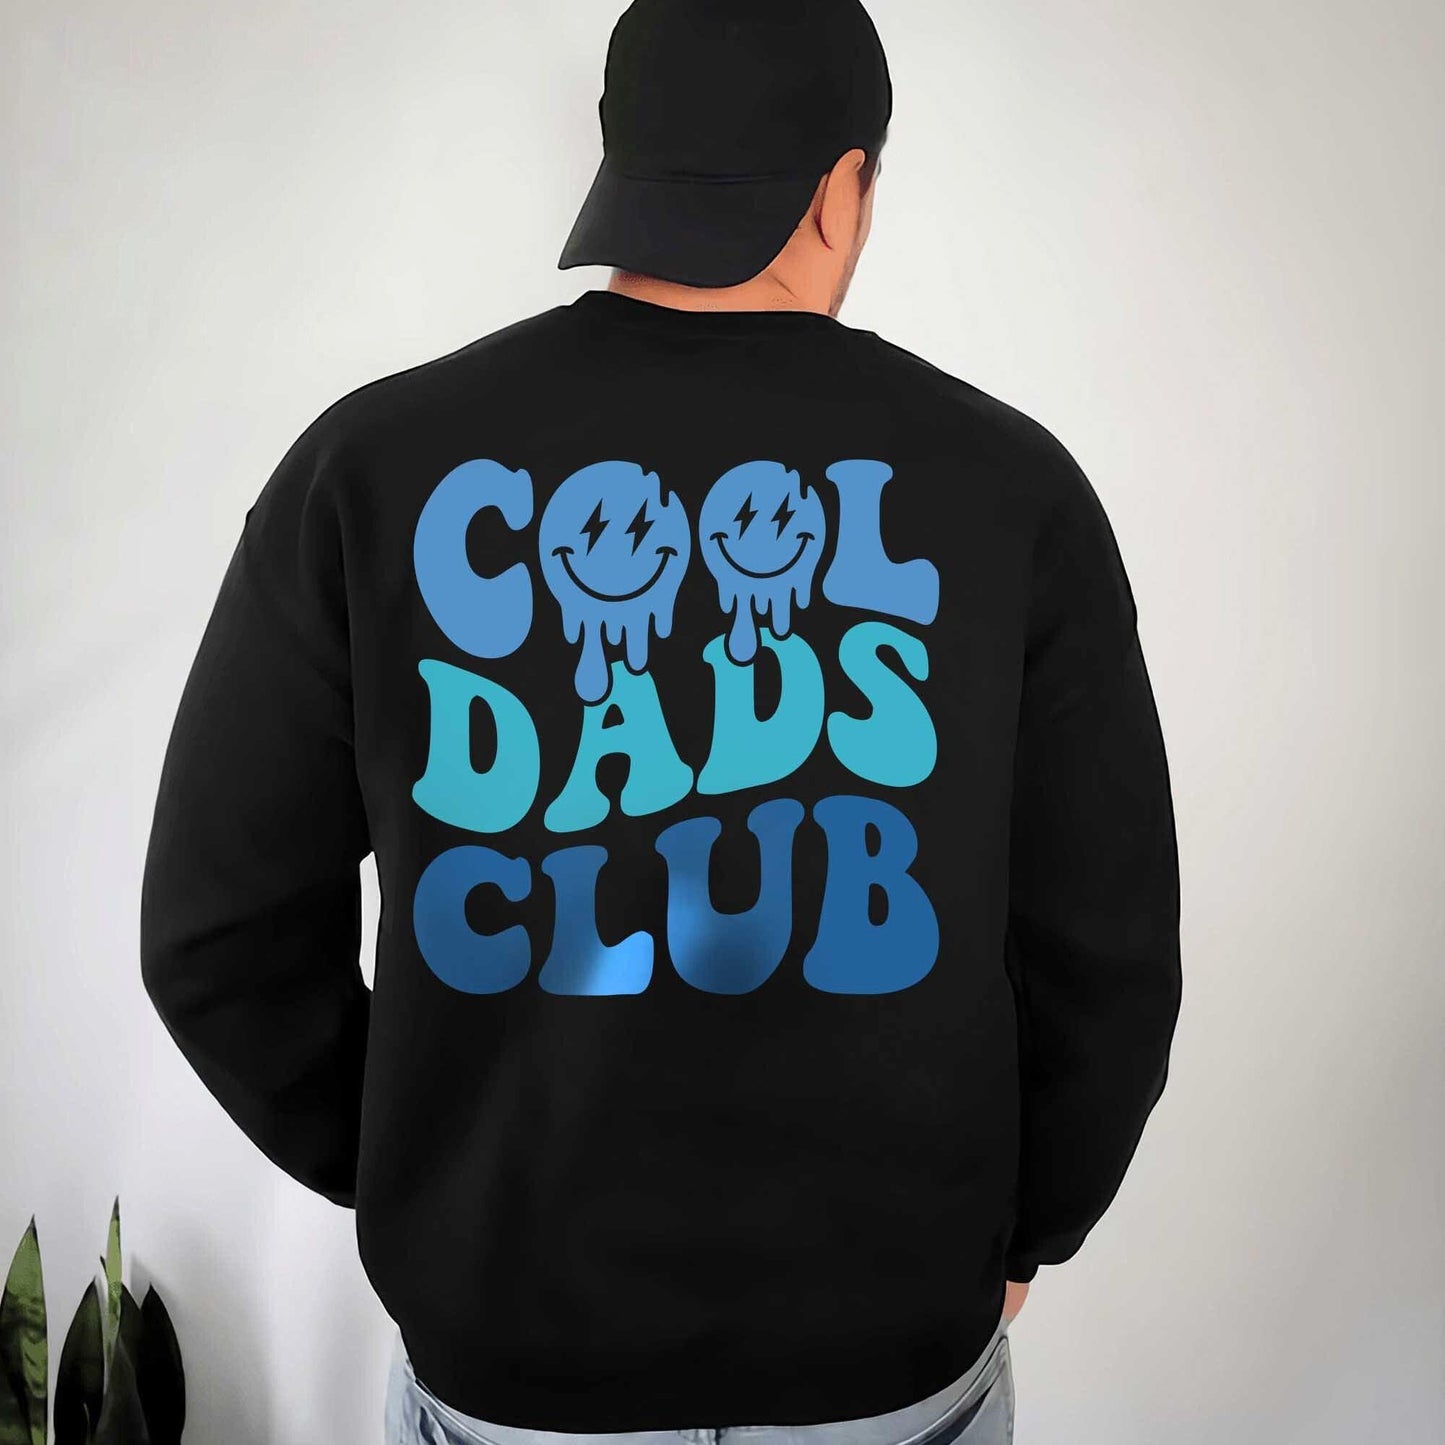 Cooler Dads Club Hoodie und Sweatshirt - Cooles Dads Shirt für Papa - GiftHaus